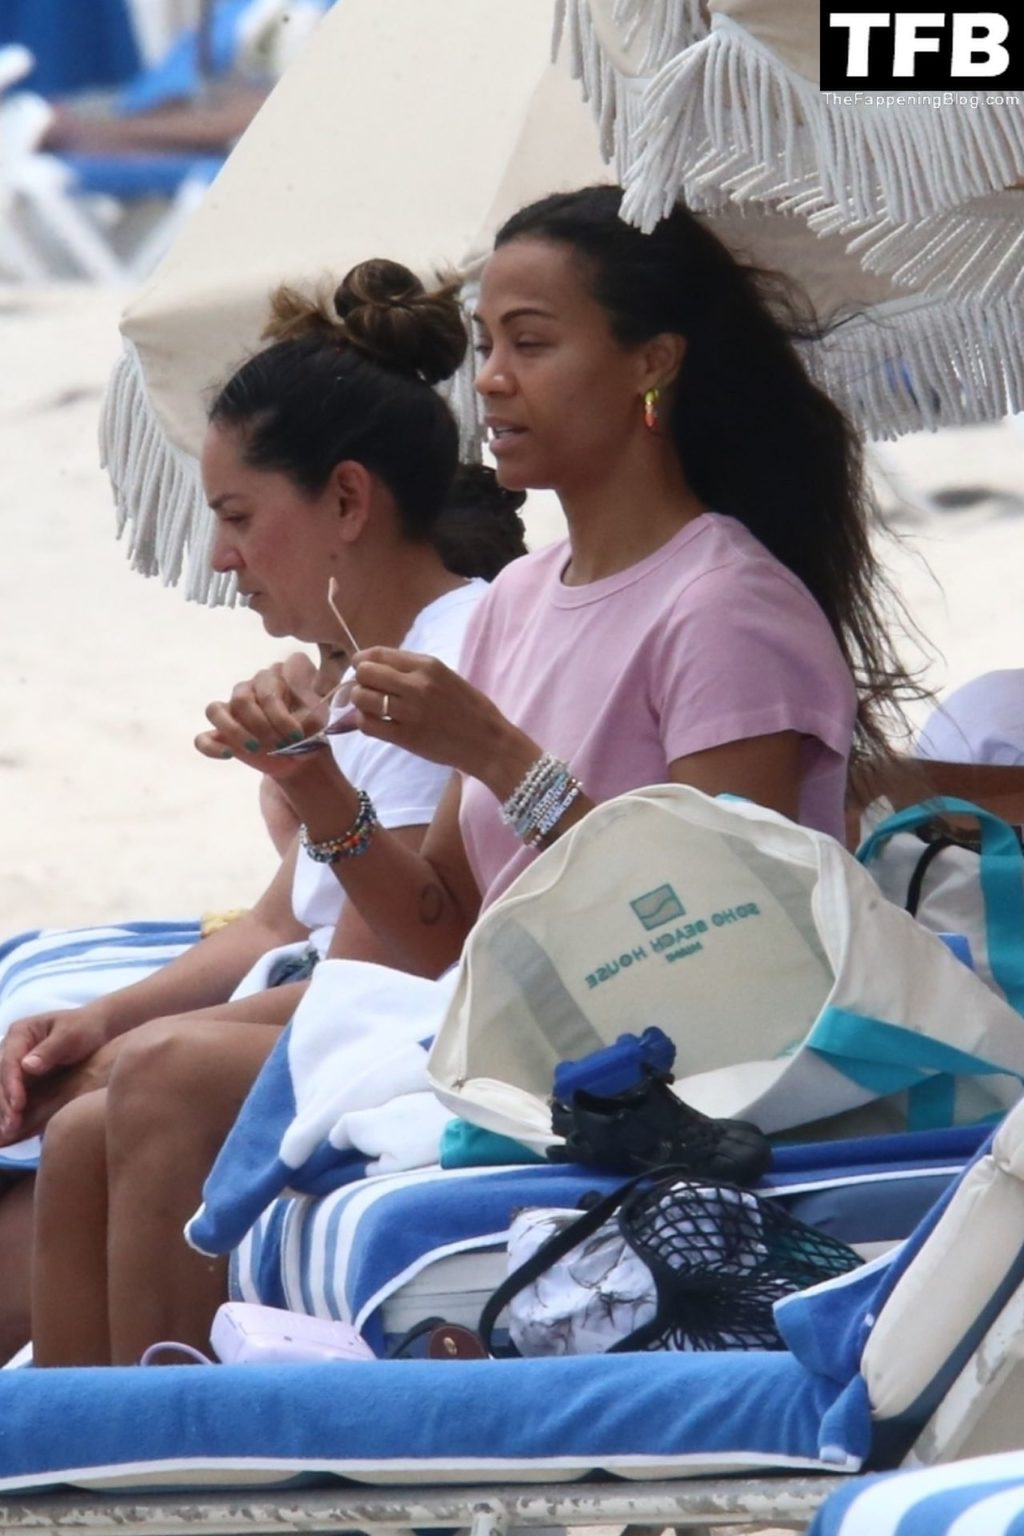 Zoe Saldana Enjoys a Day at the Beach With Her Family (79 Photos)